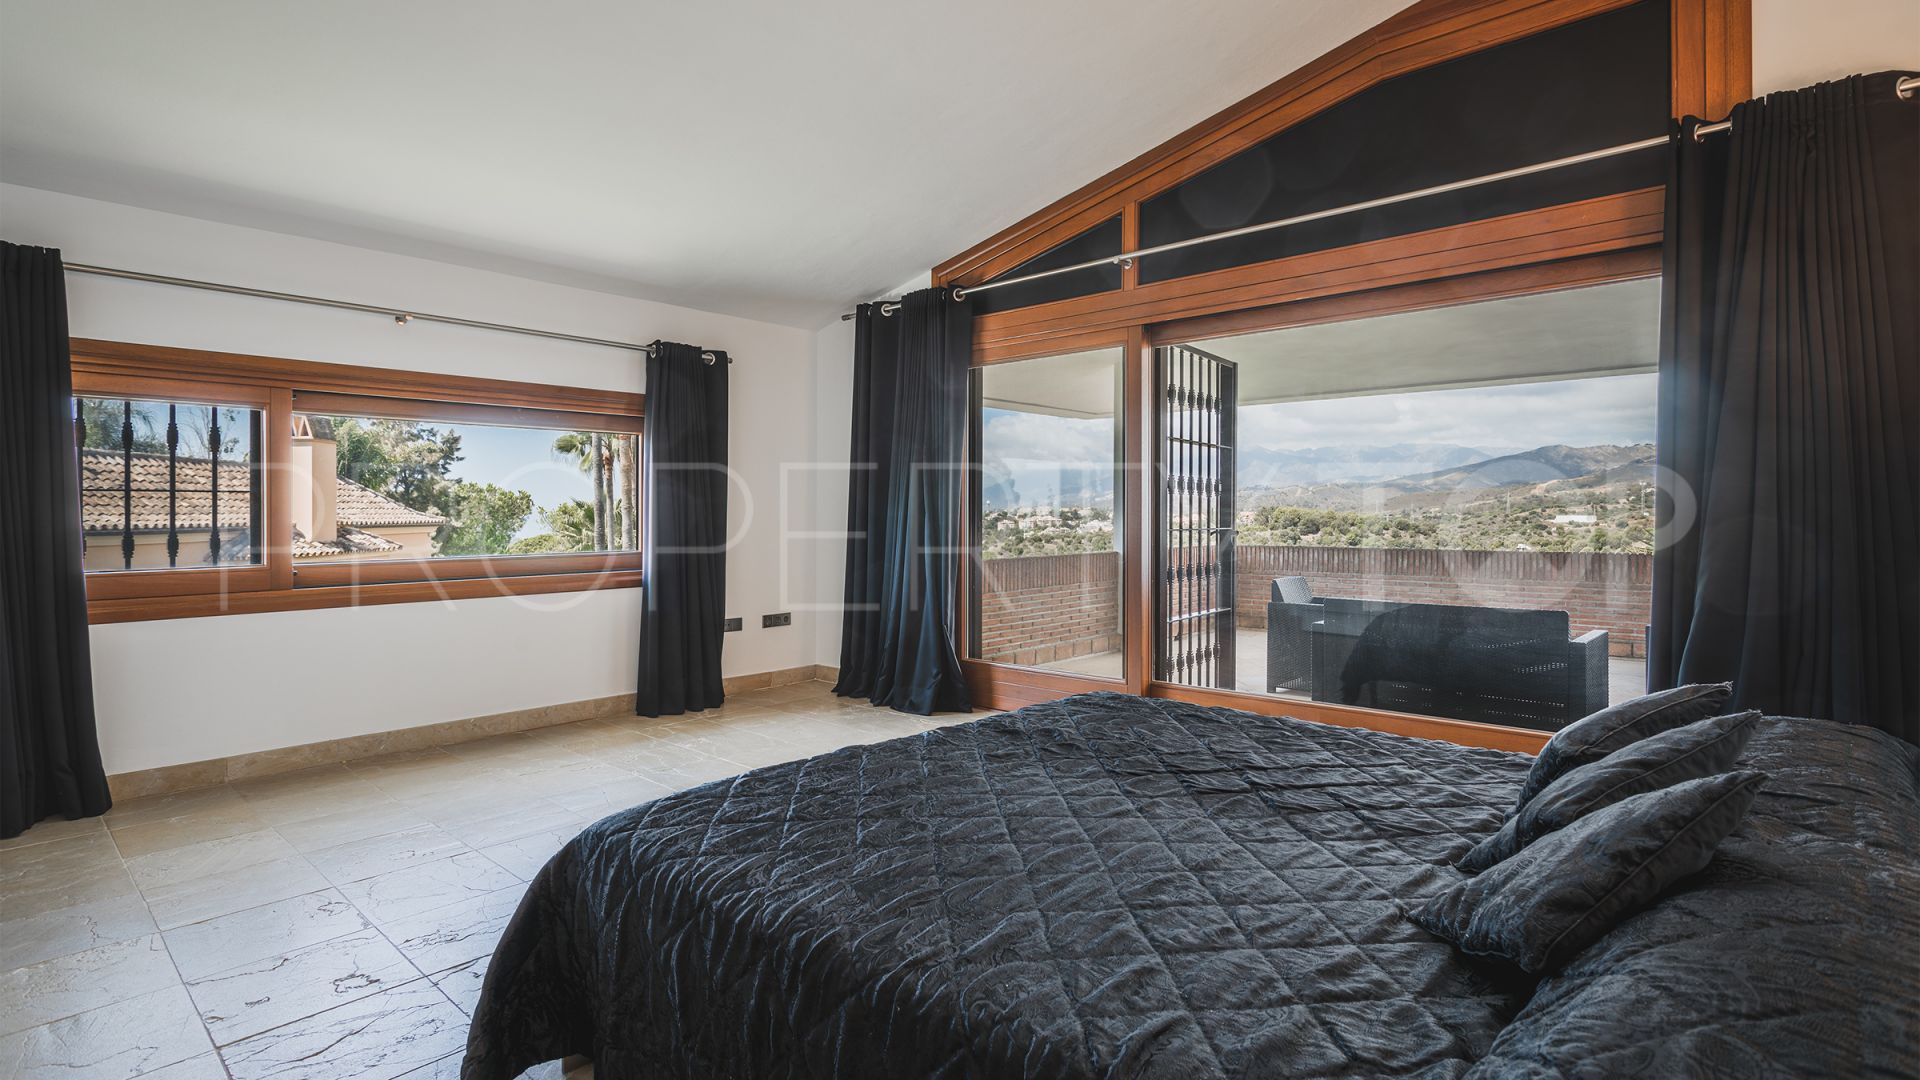 For sale villa with 7 bedrooms in Hacienda las Chapas